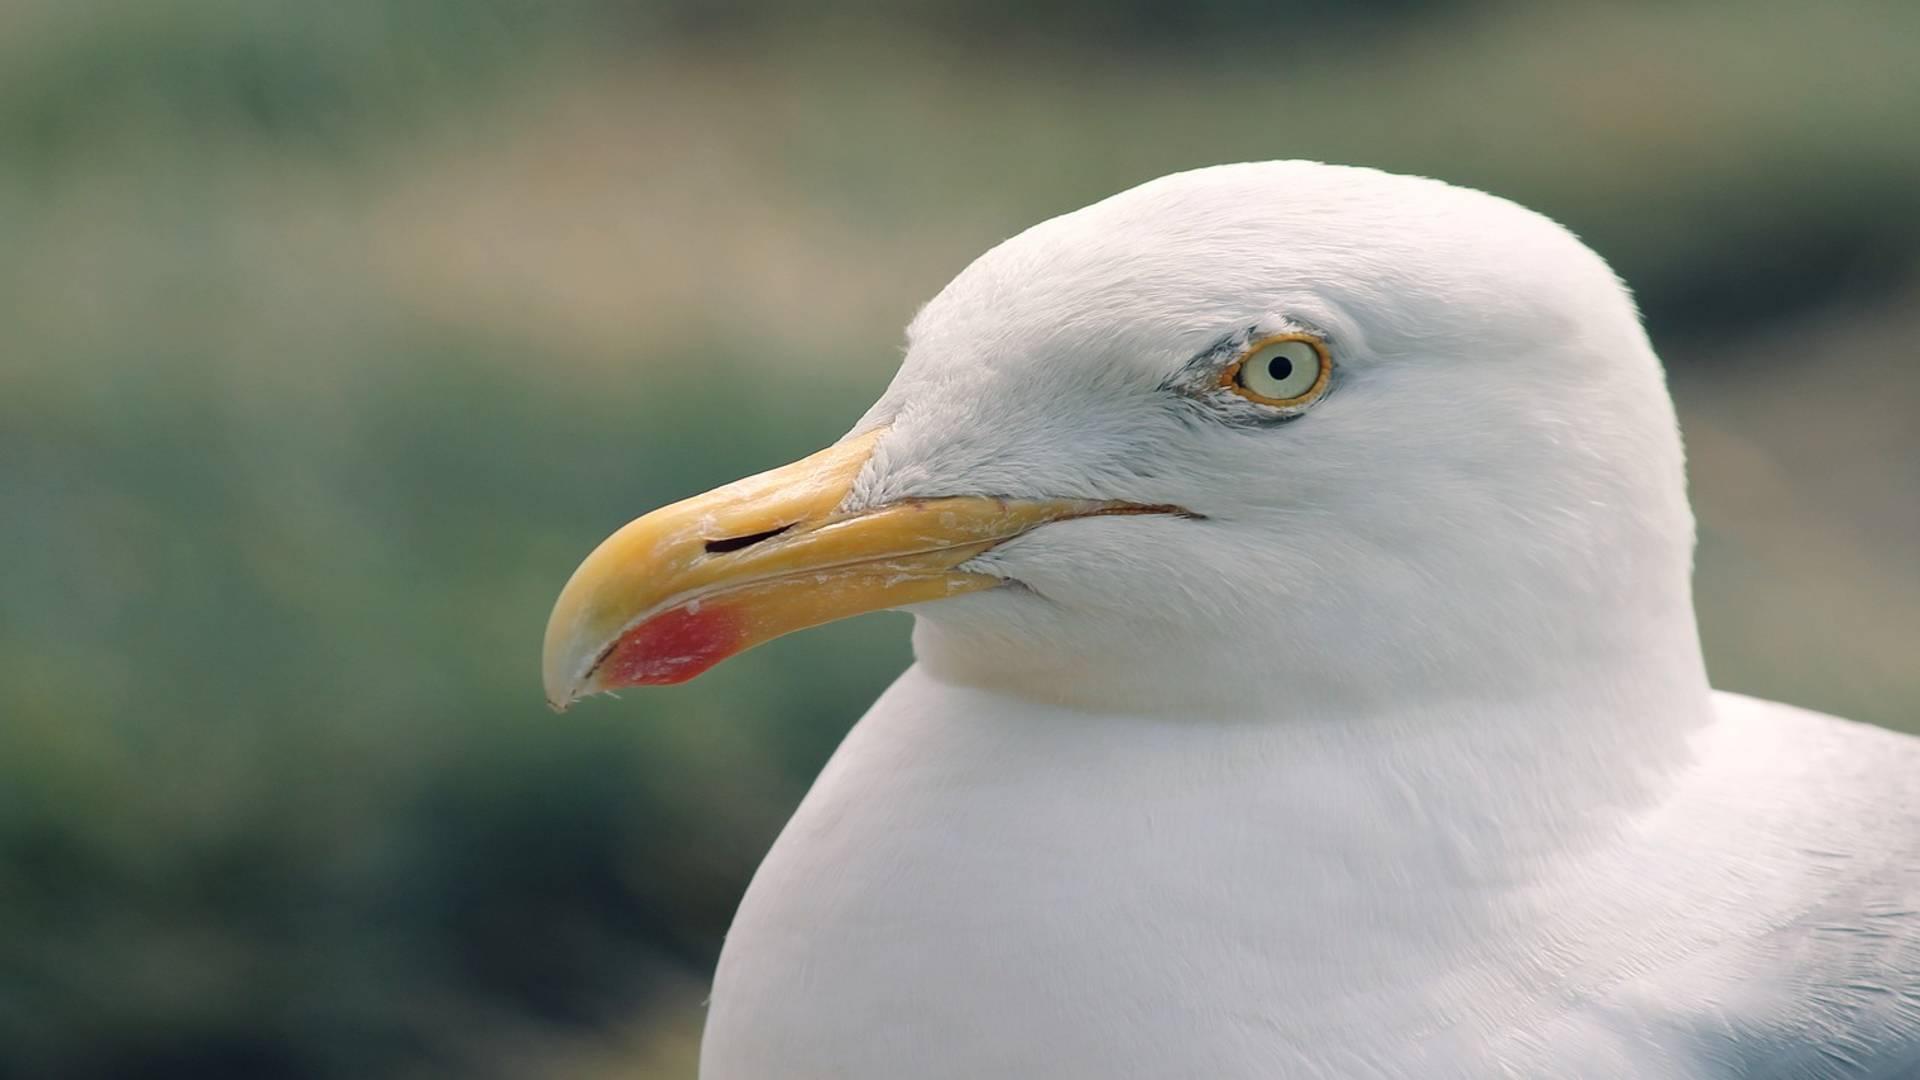 Seagulls female vs male comparison